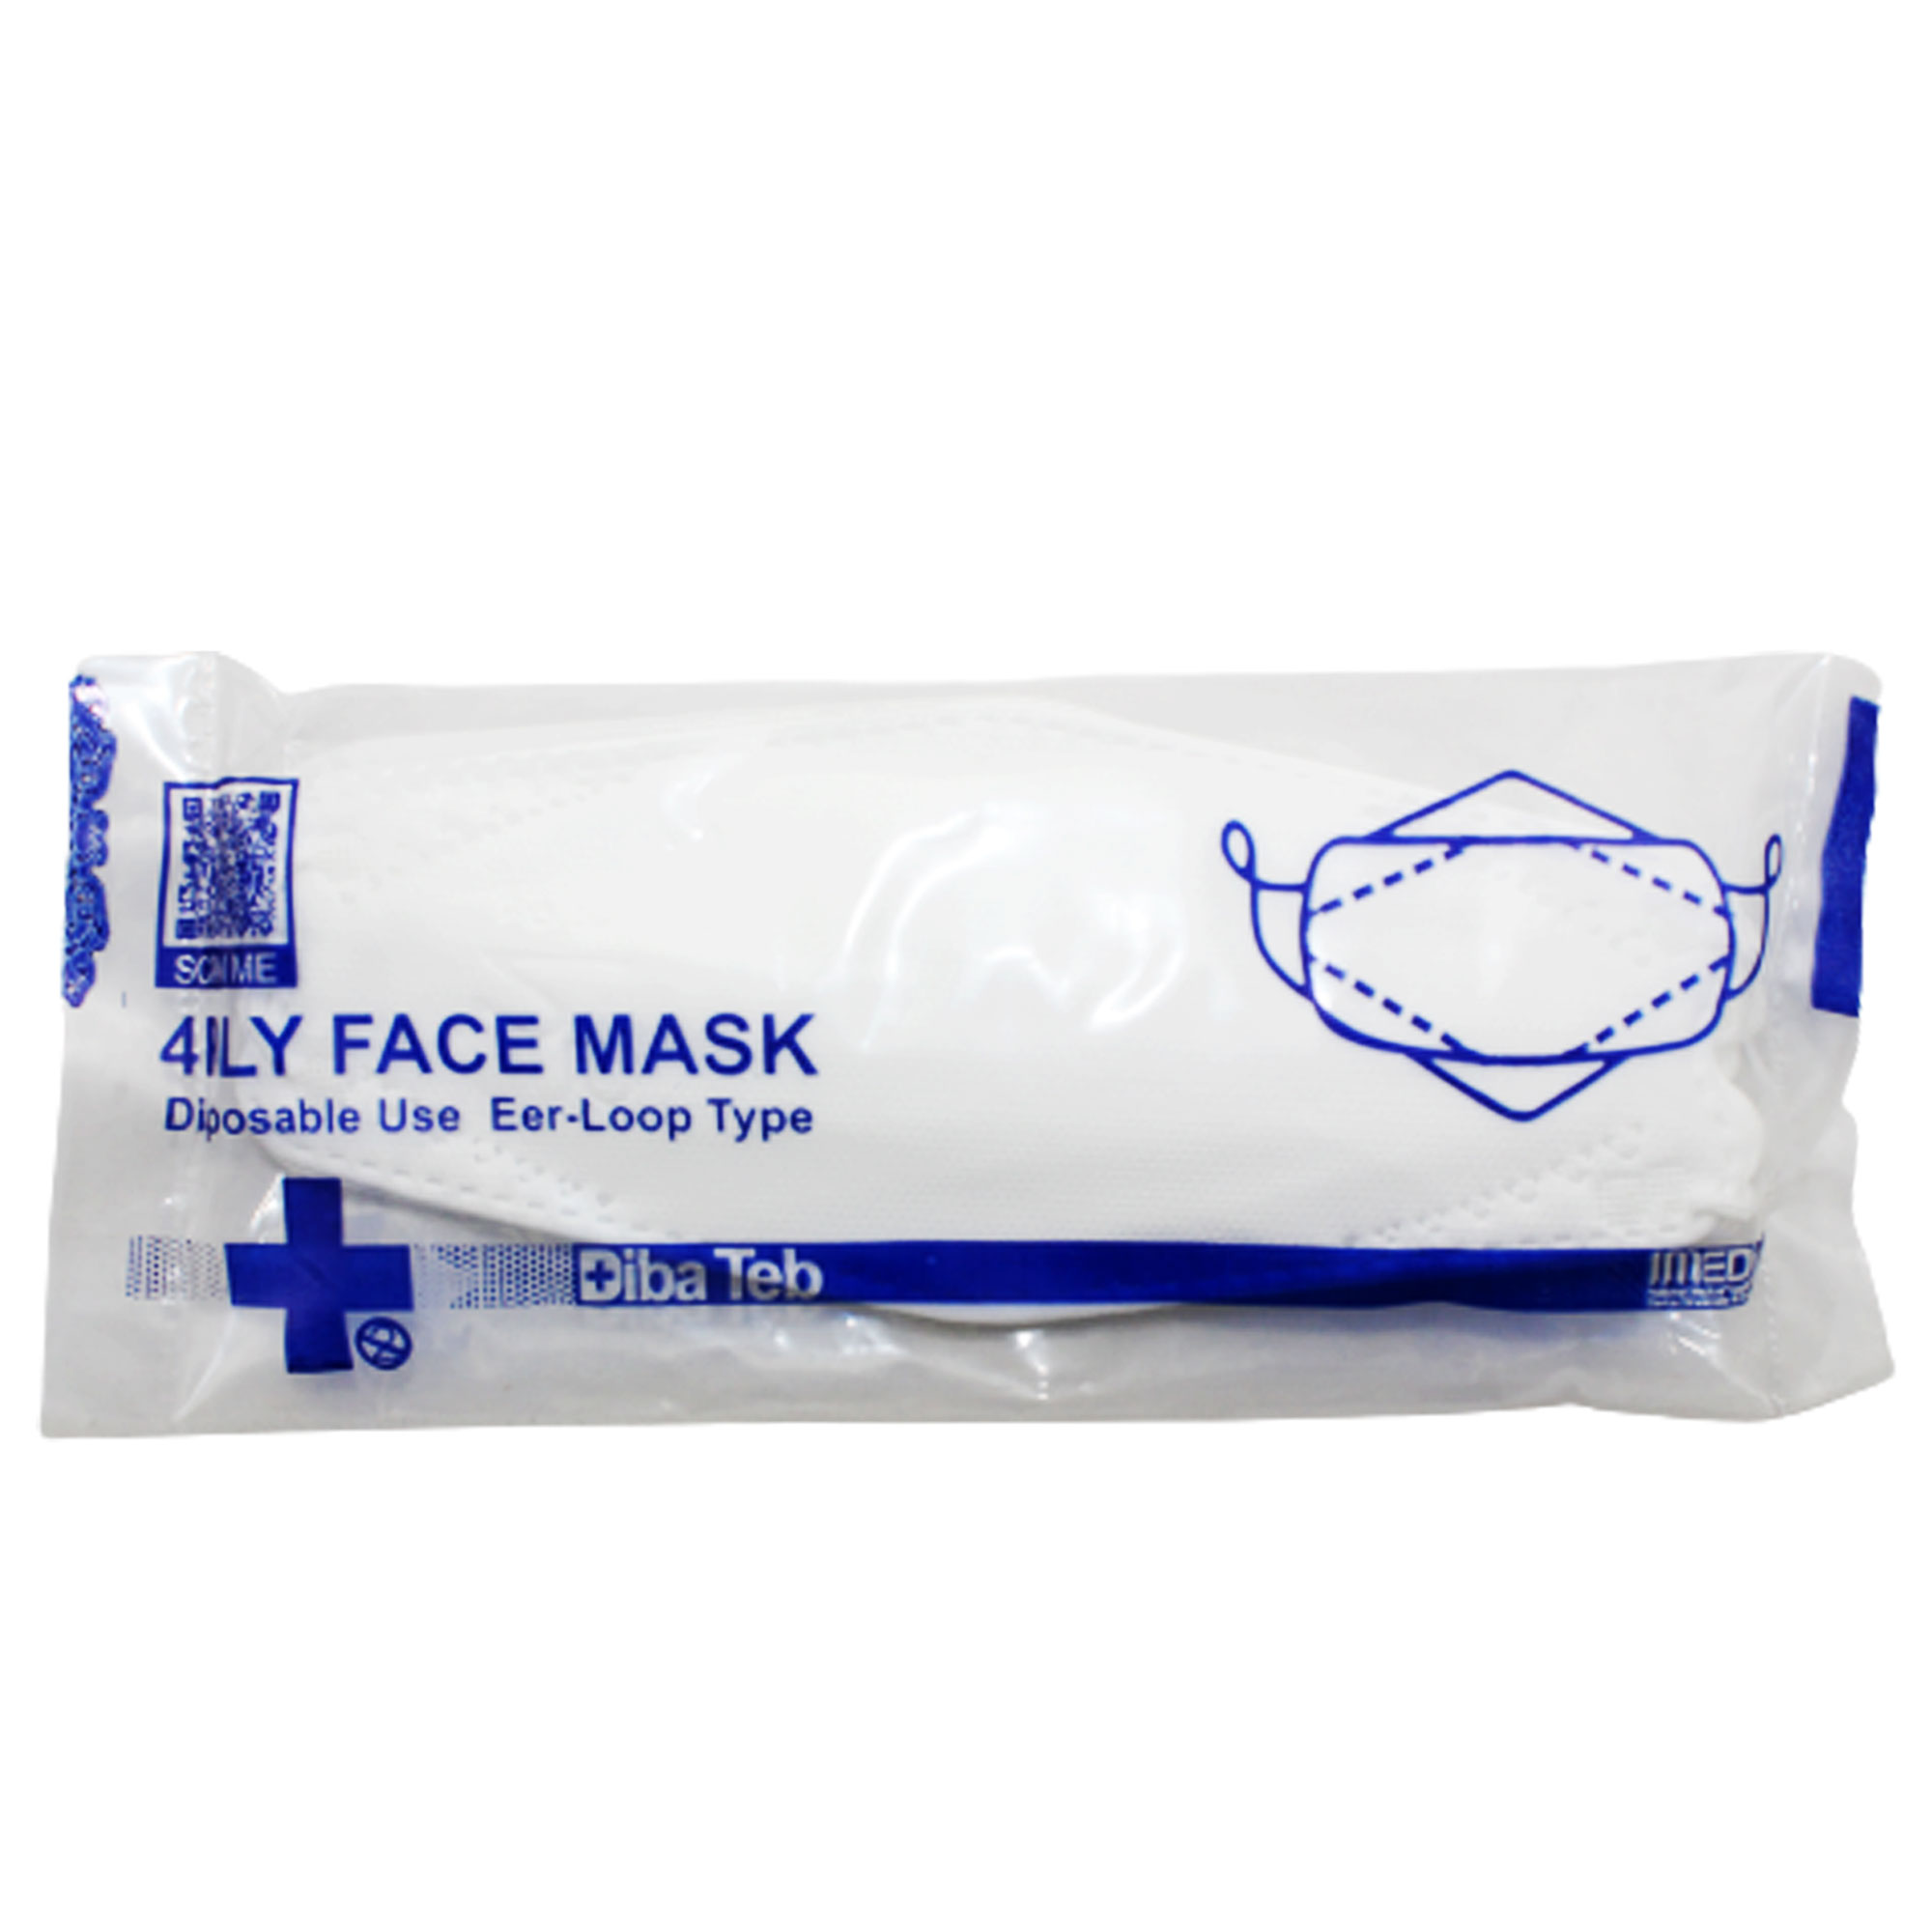 ماسک تنفسی دیباطب مدل 3d بسته 10 عددی